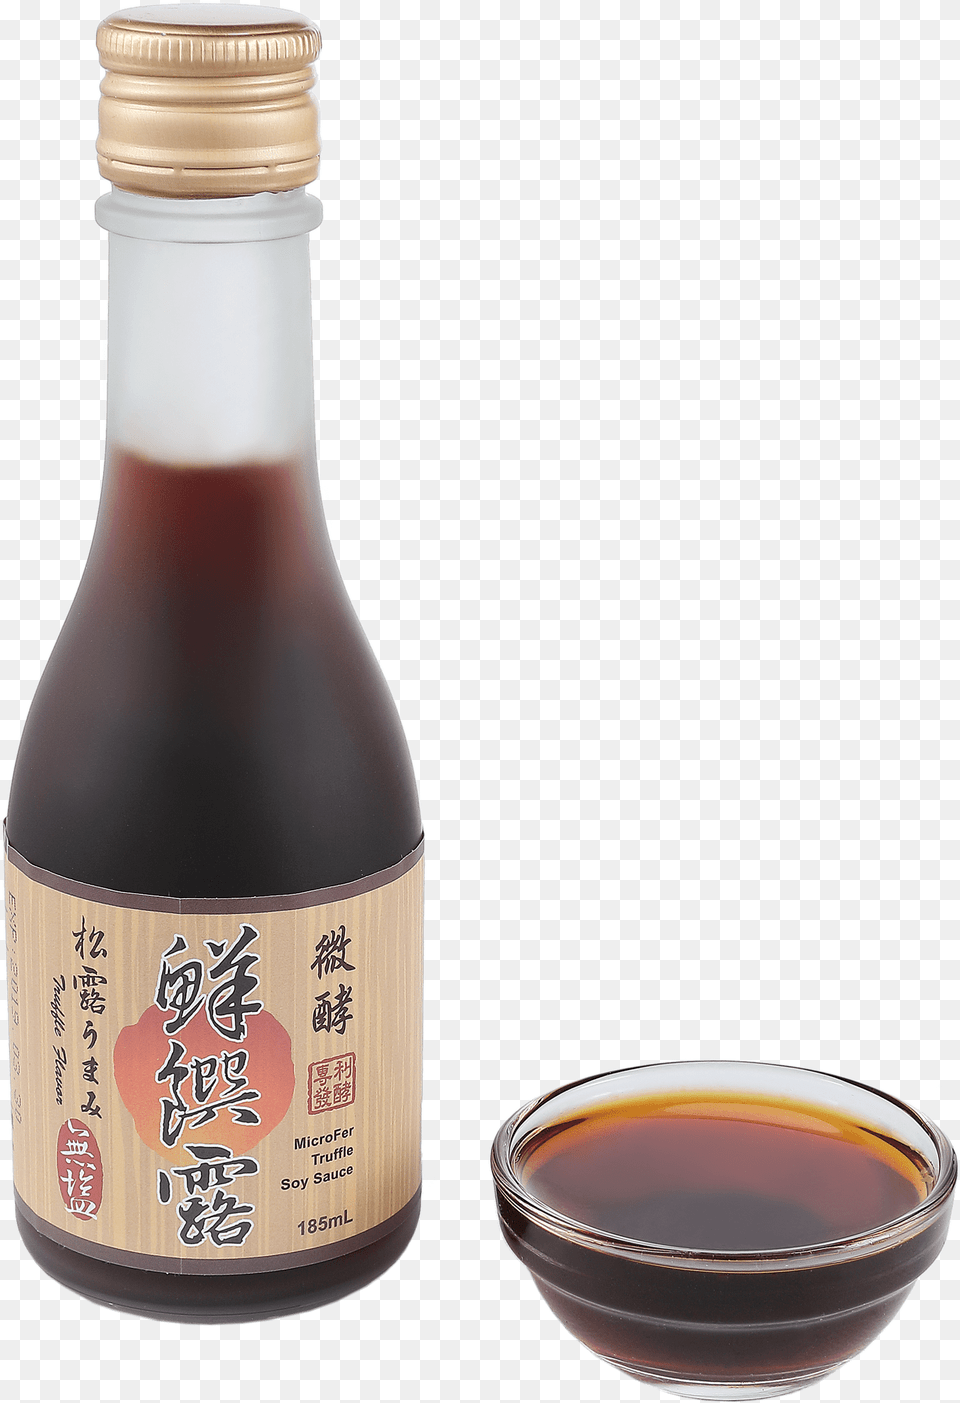 Microfer Soy Sauce Bottle, Alcohol, Beverage, Sake, Food Png Image